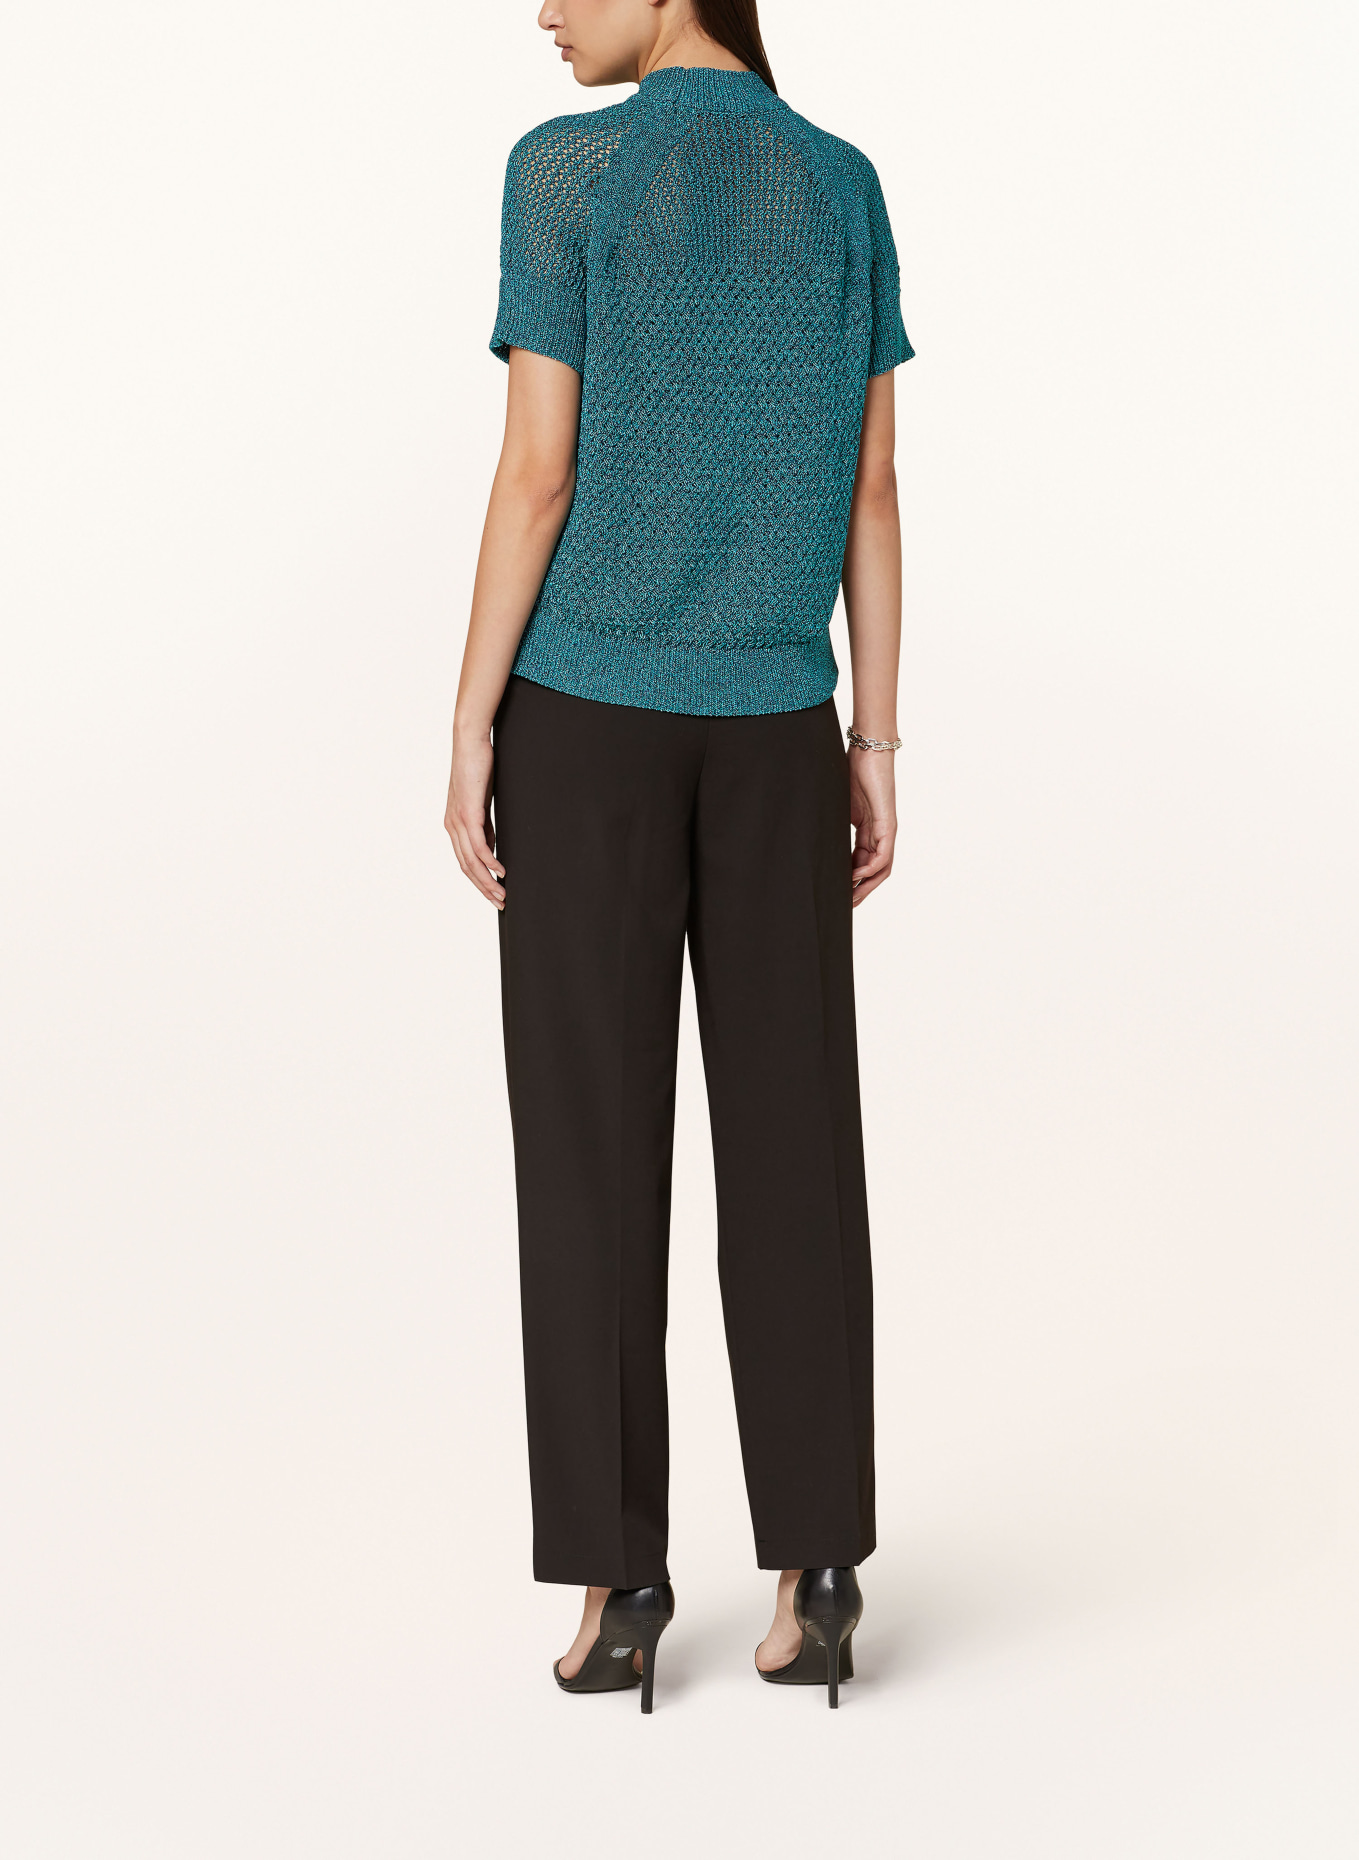 TED BAKER Knit shirt MATILDR, Color: TEAL (Image 3)